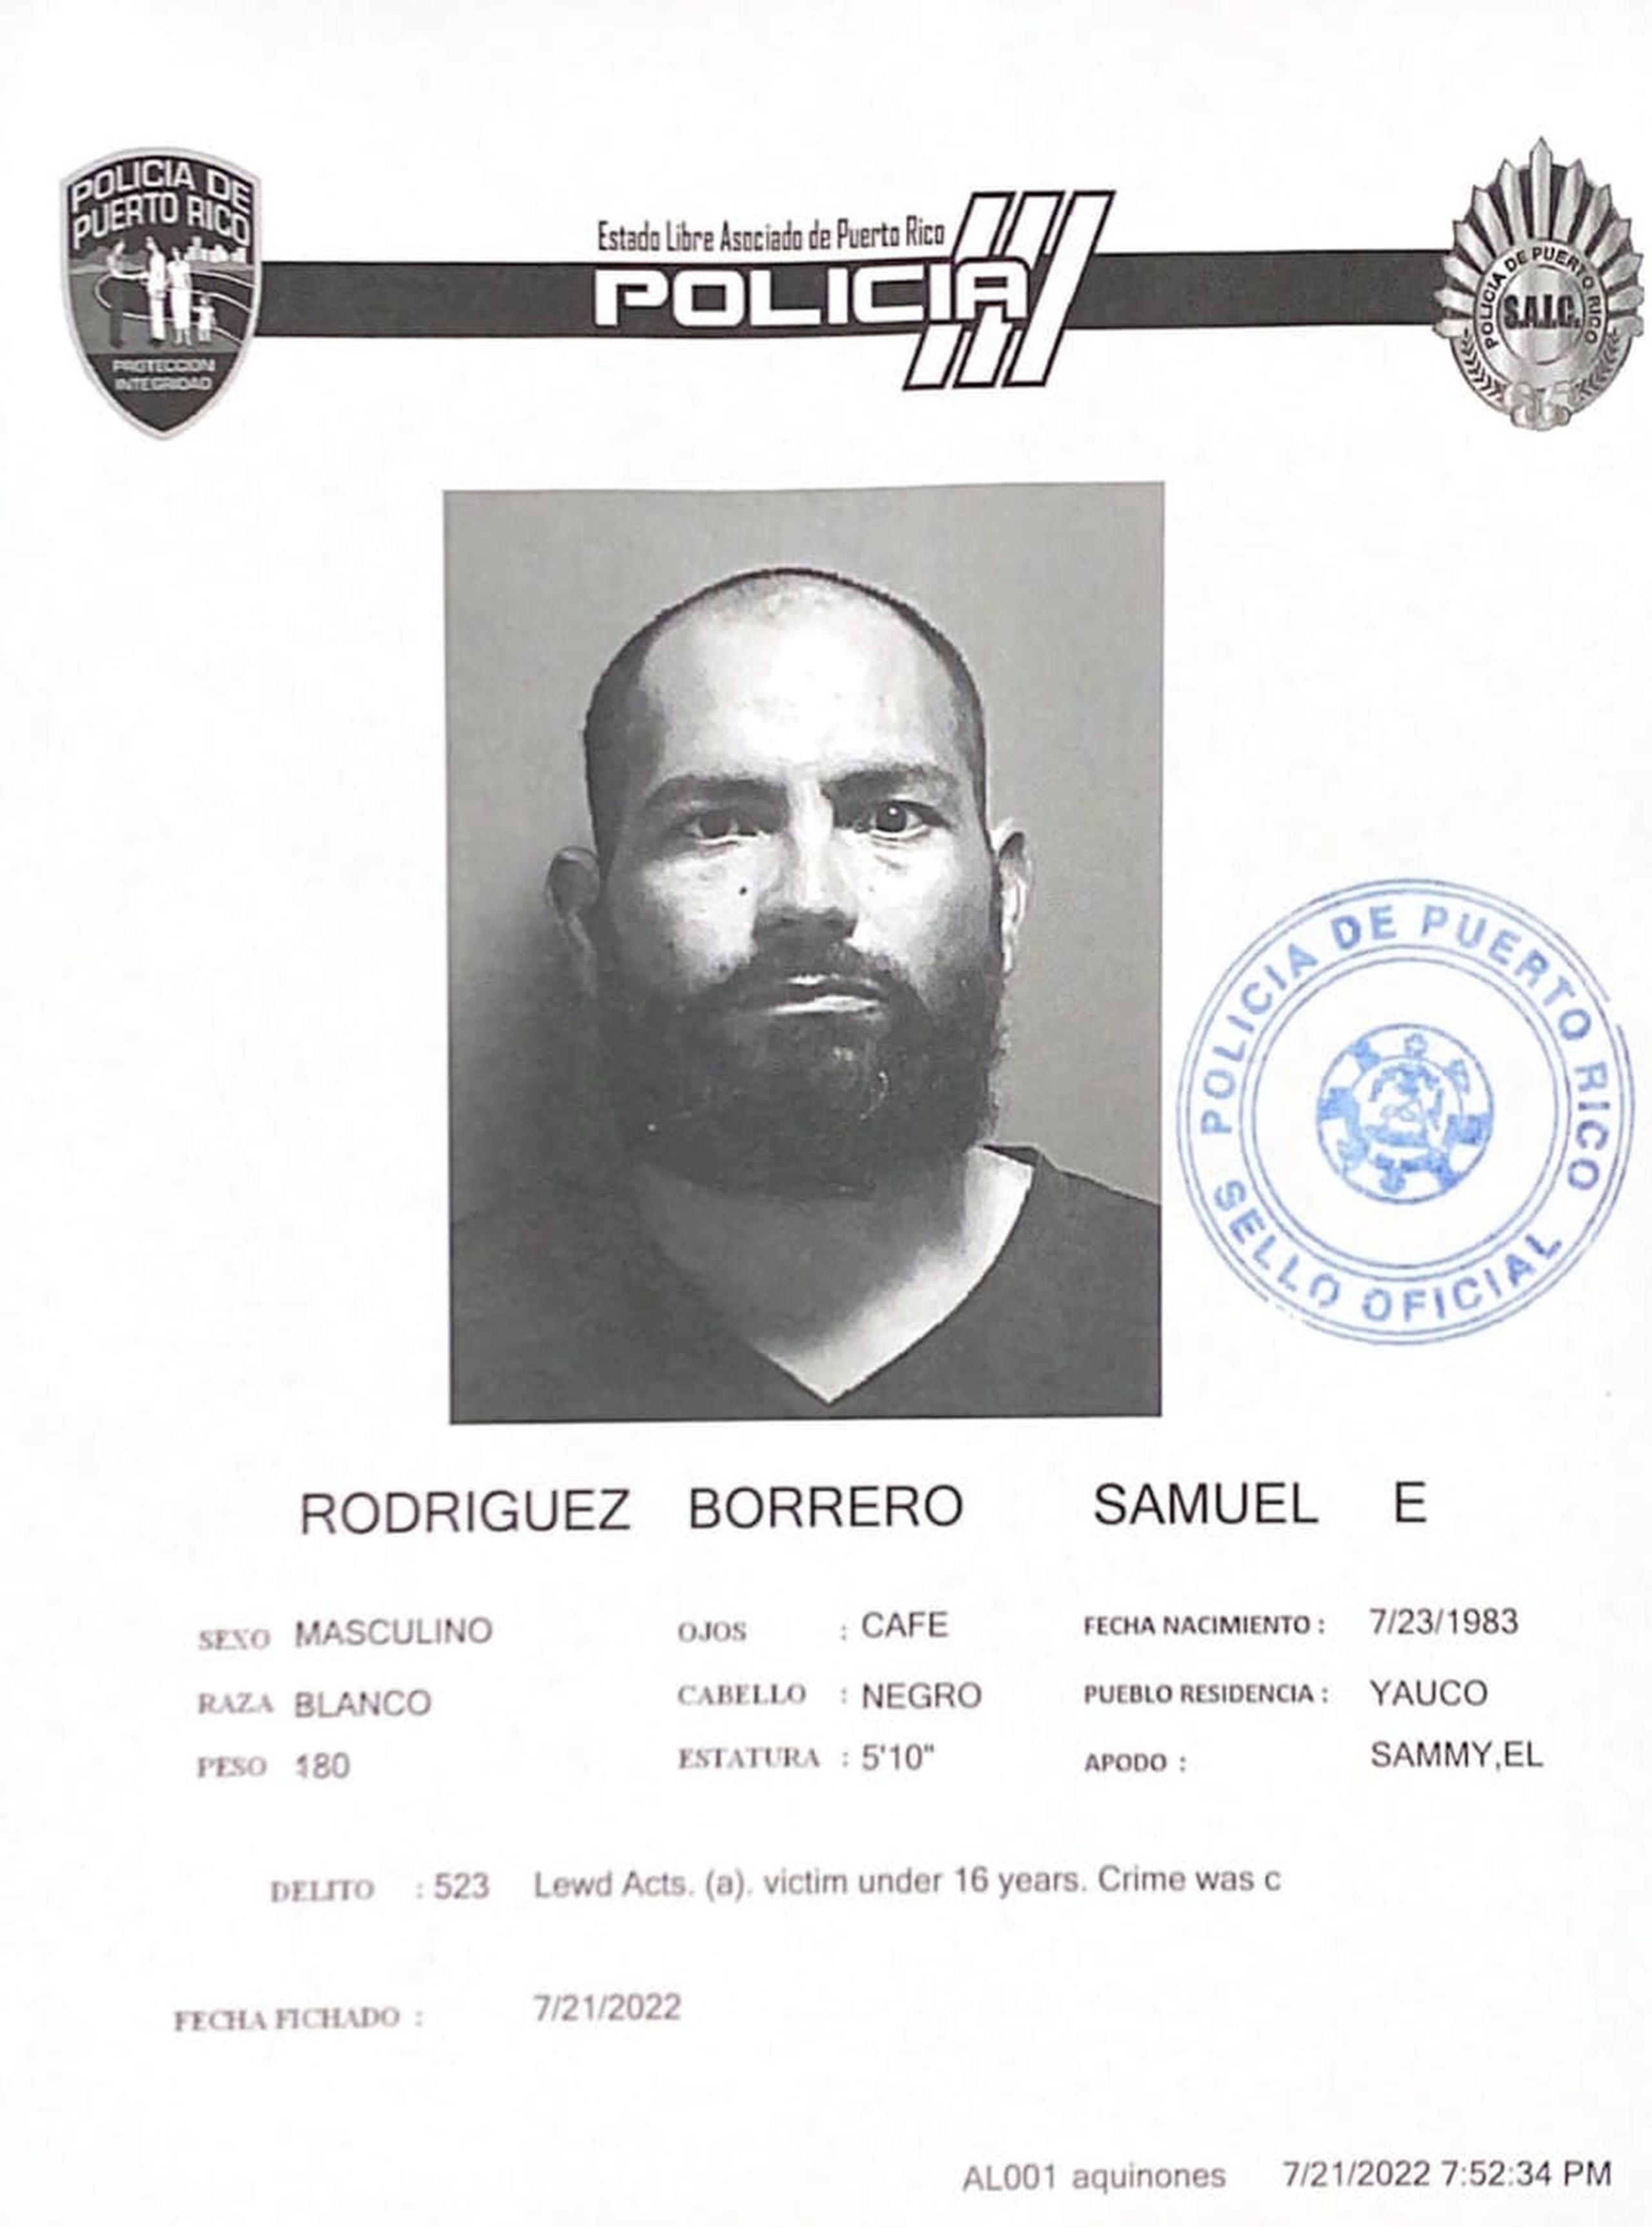 Samuel E. Rodríguez Borrero enfrenta cargos por actos lascivos y maltrato de menores.